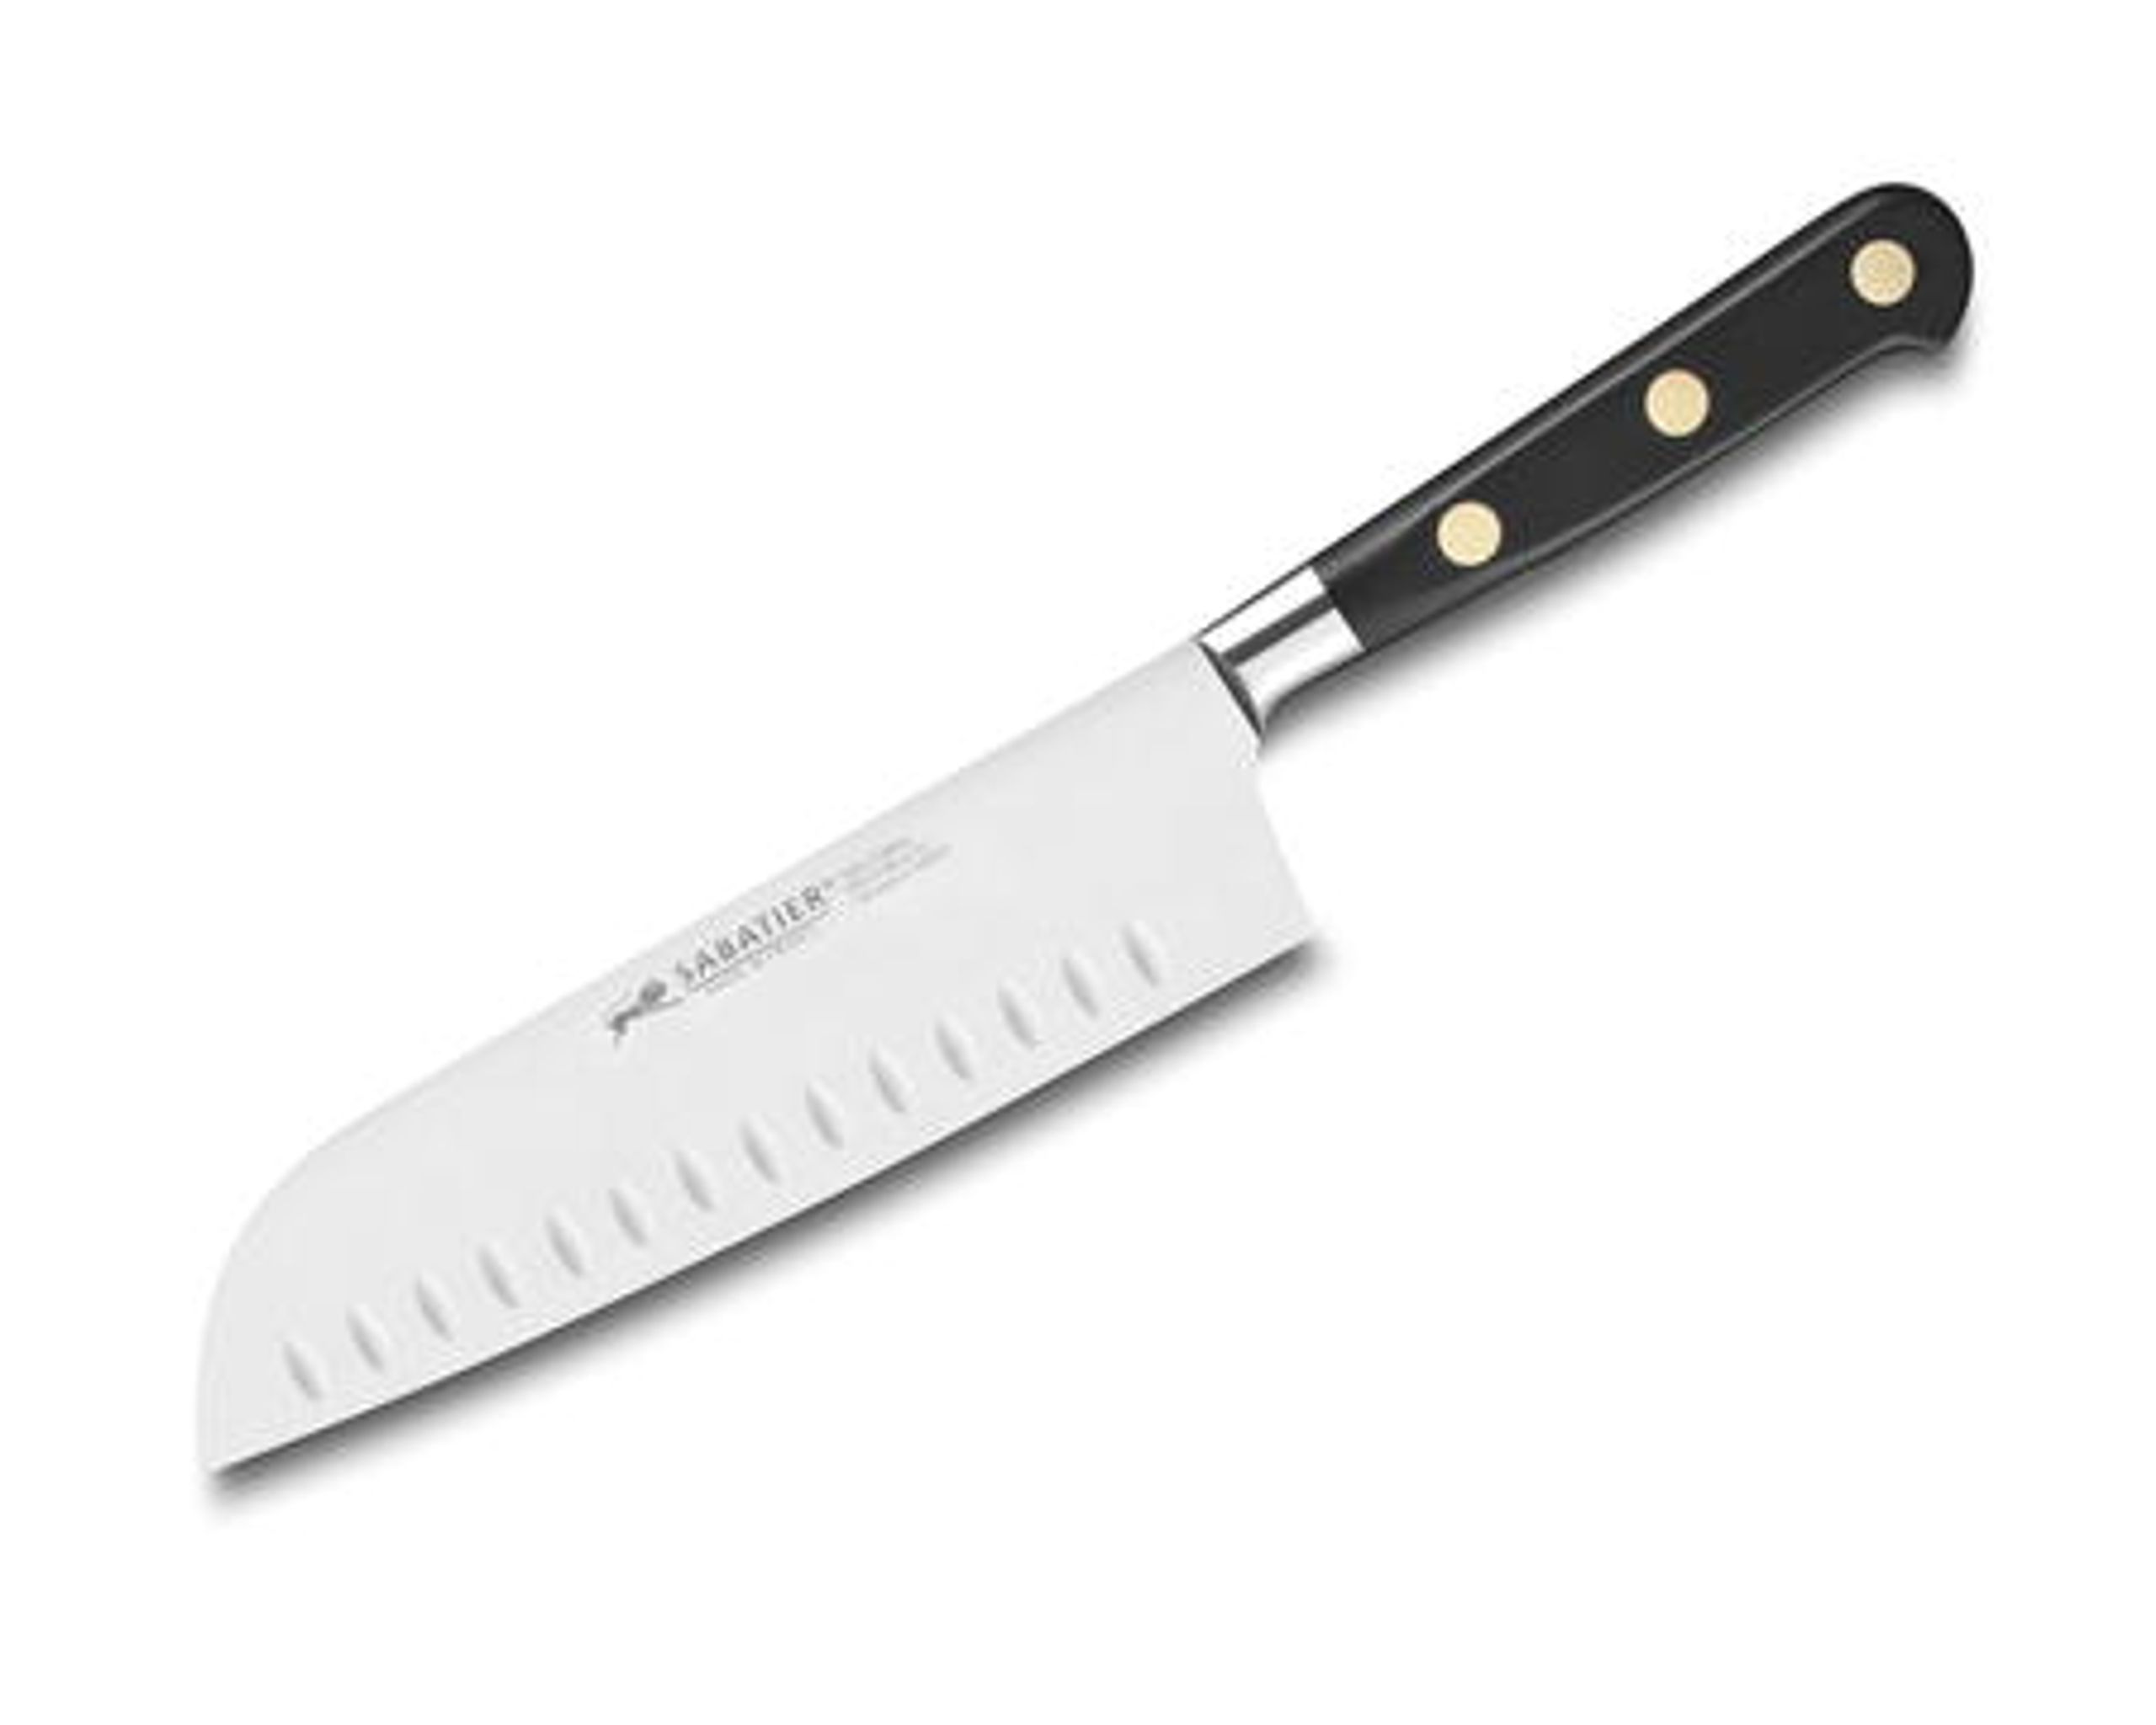 Lion Sabatier Ideal Knife Series - Couteau - Lion Sabatier